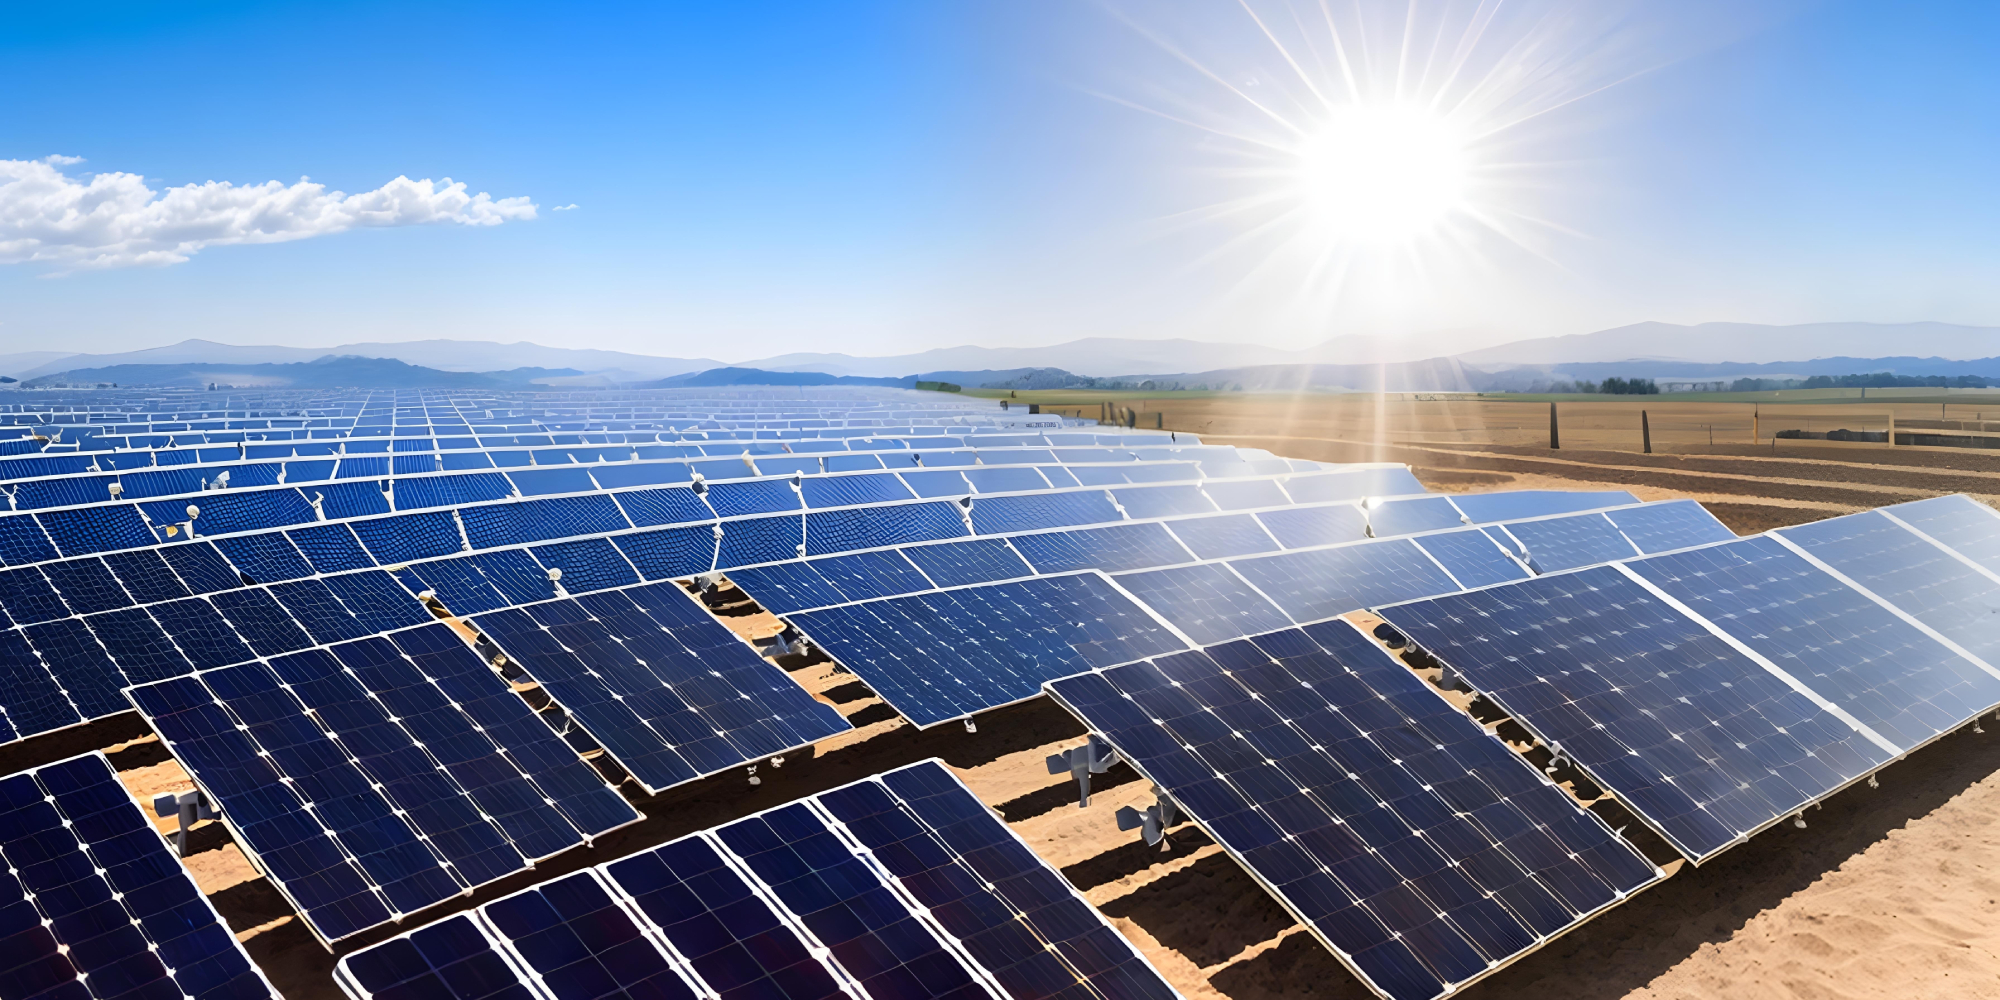 Luz solar, el ahorro energético de cara al futuro!